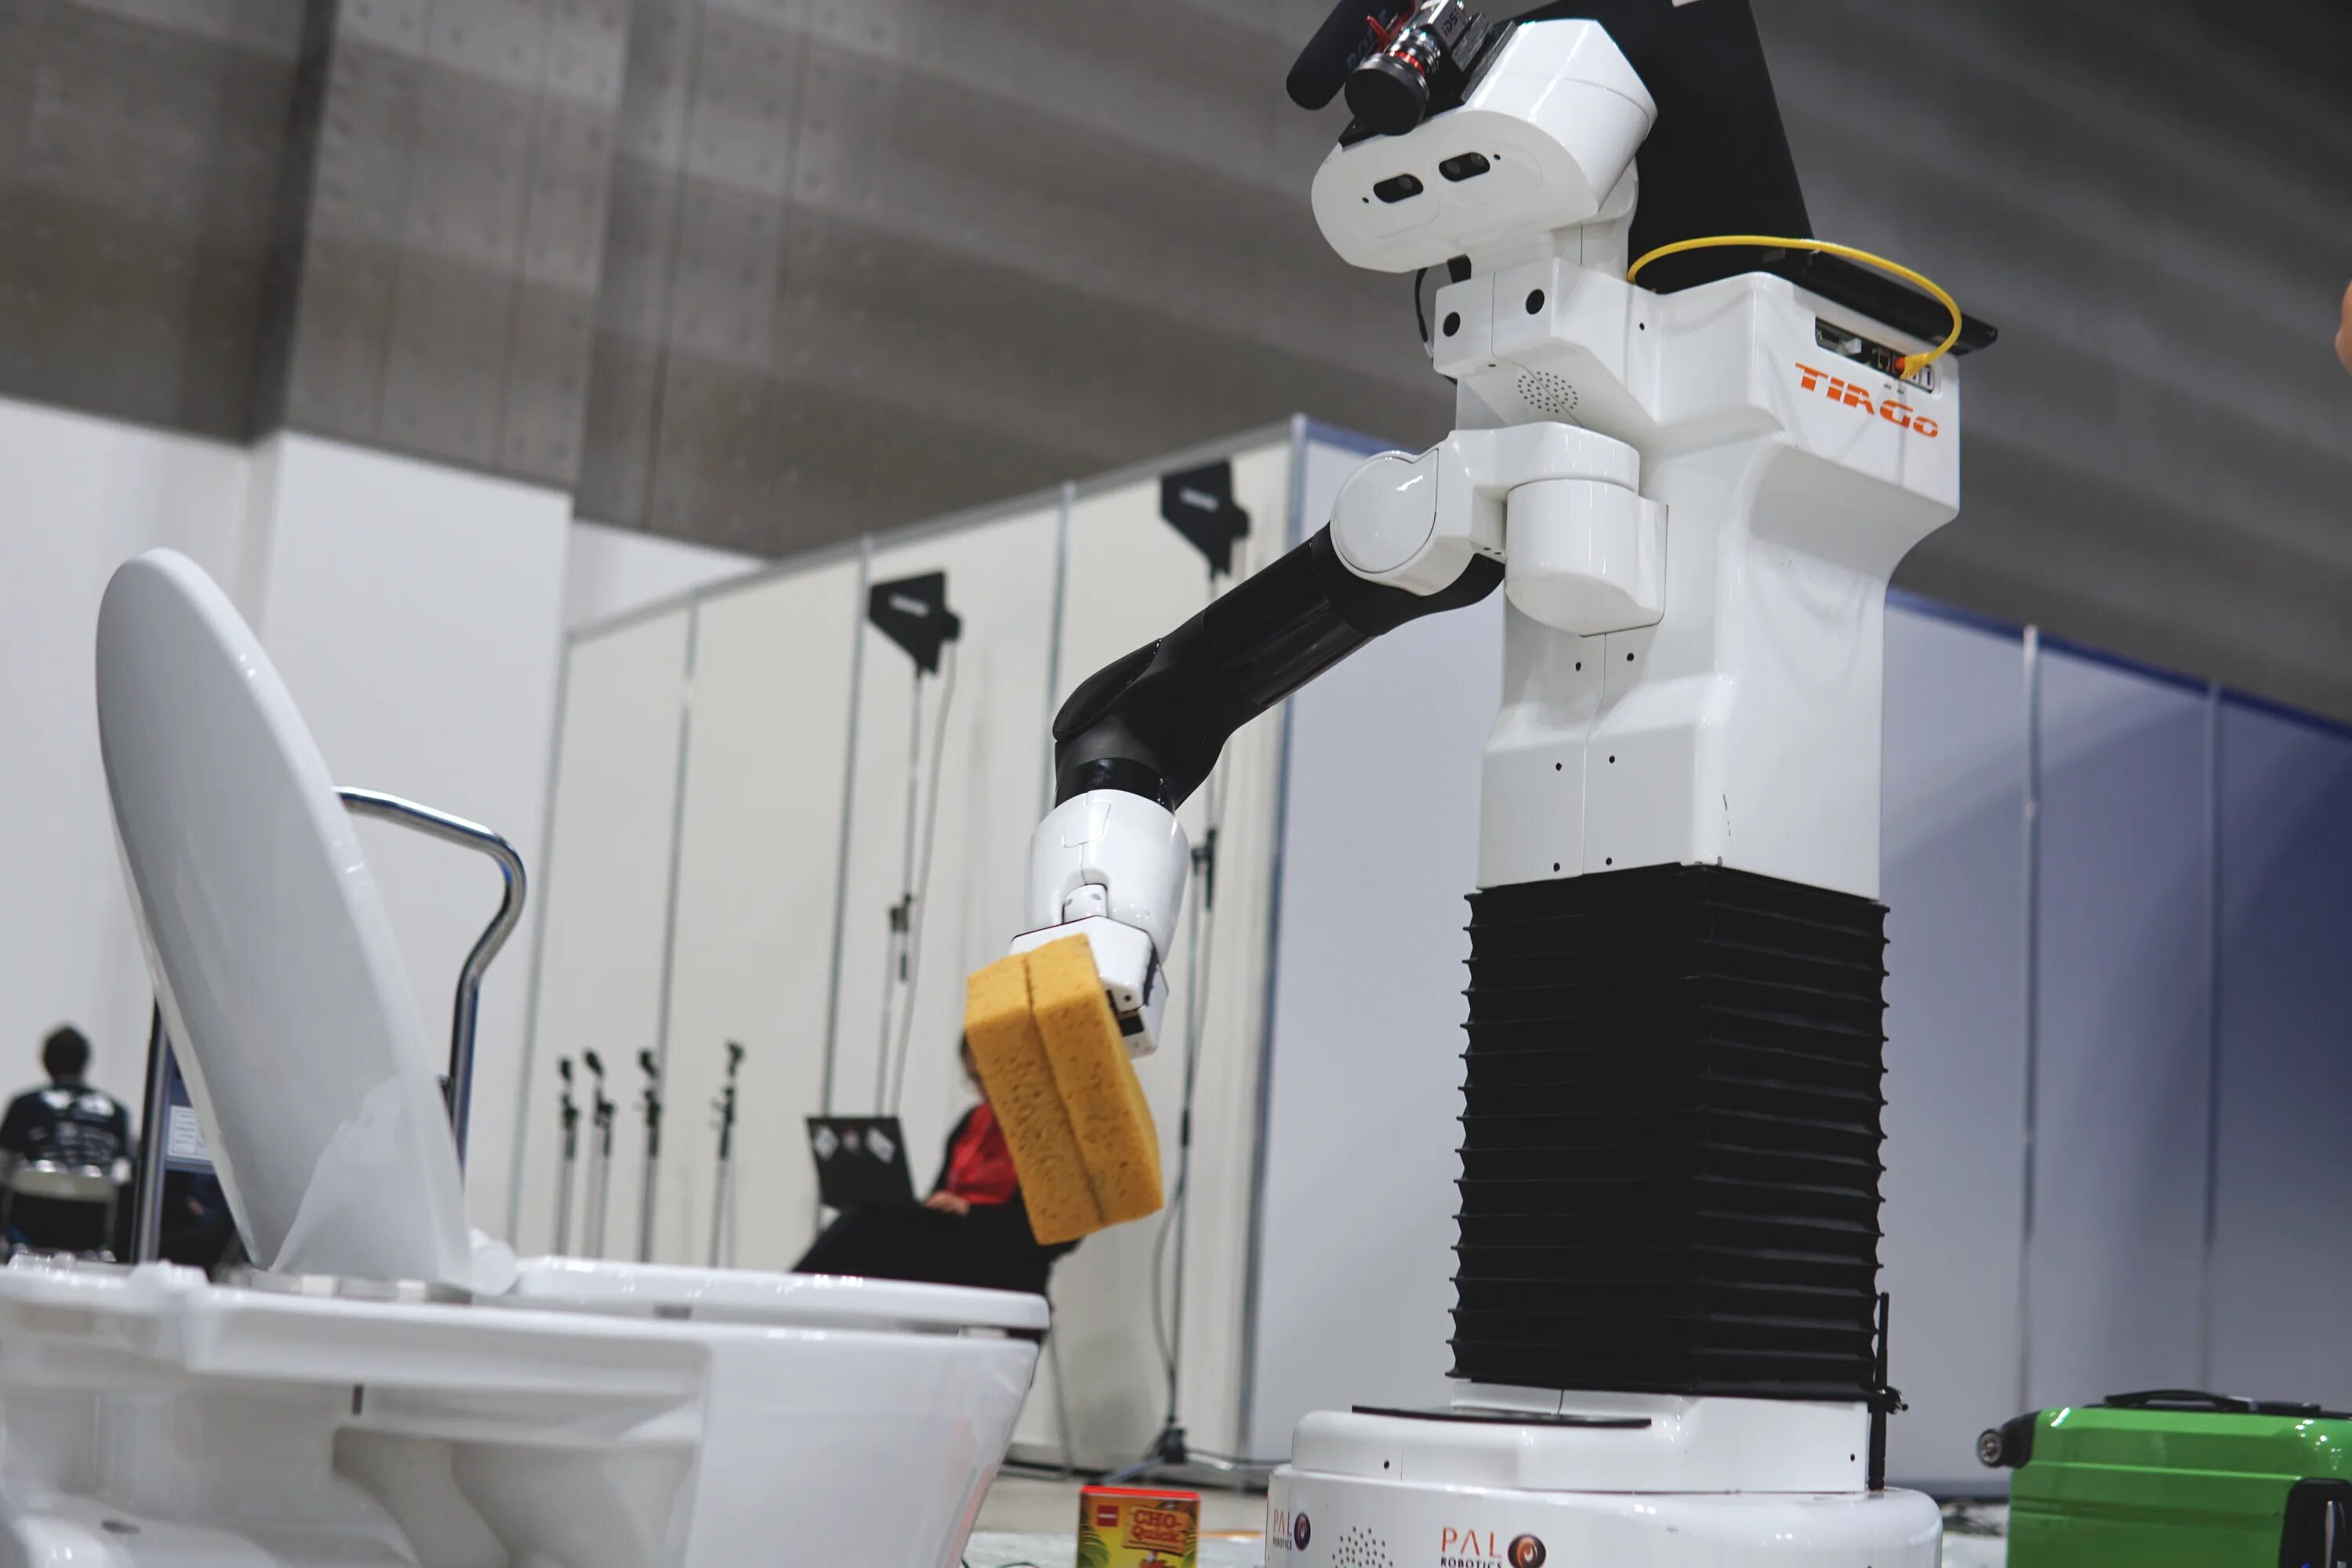 Robot cleaner rob 00. Робот помощник по дому. Робот уборщик. Бытовые роботы помощники. Роботы в быту.